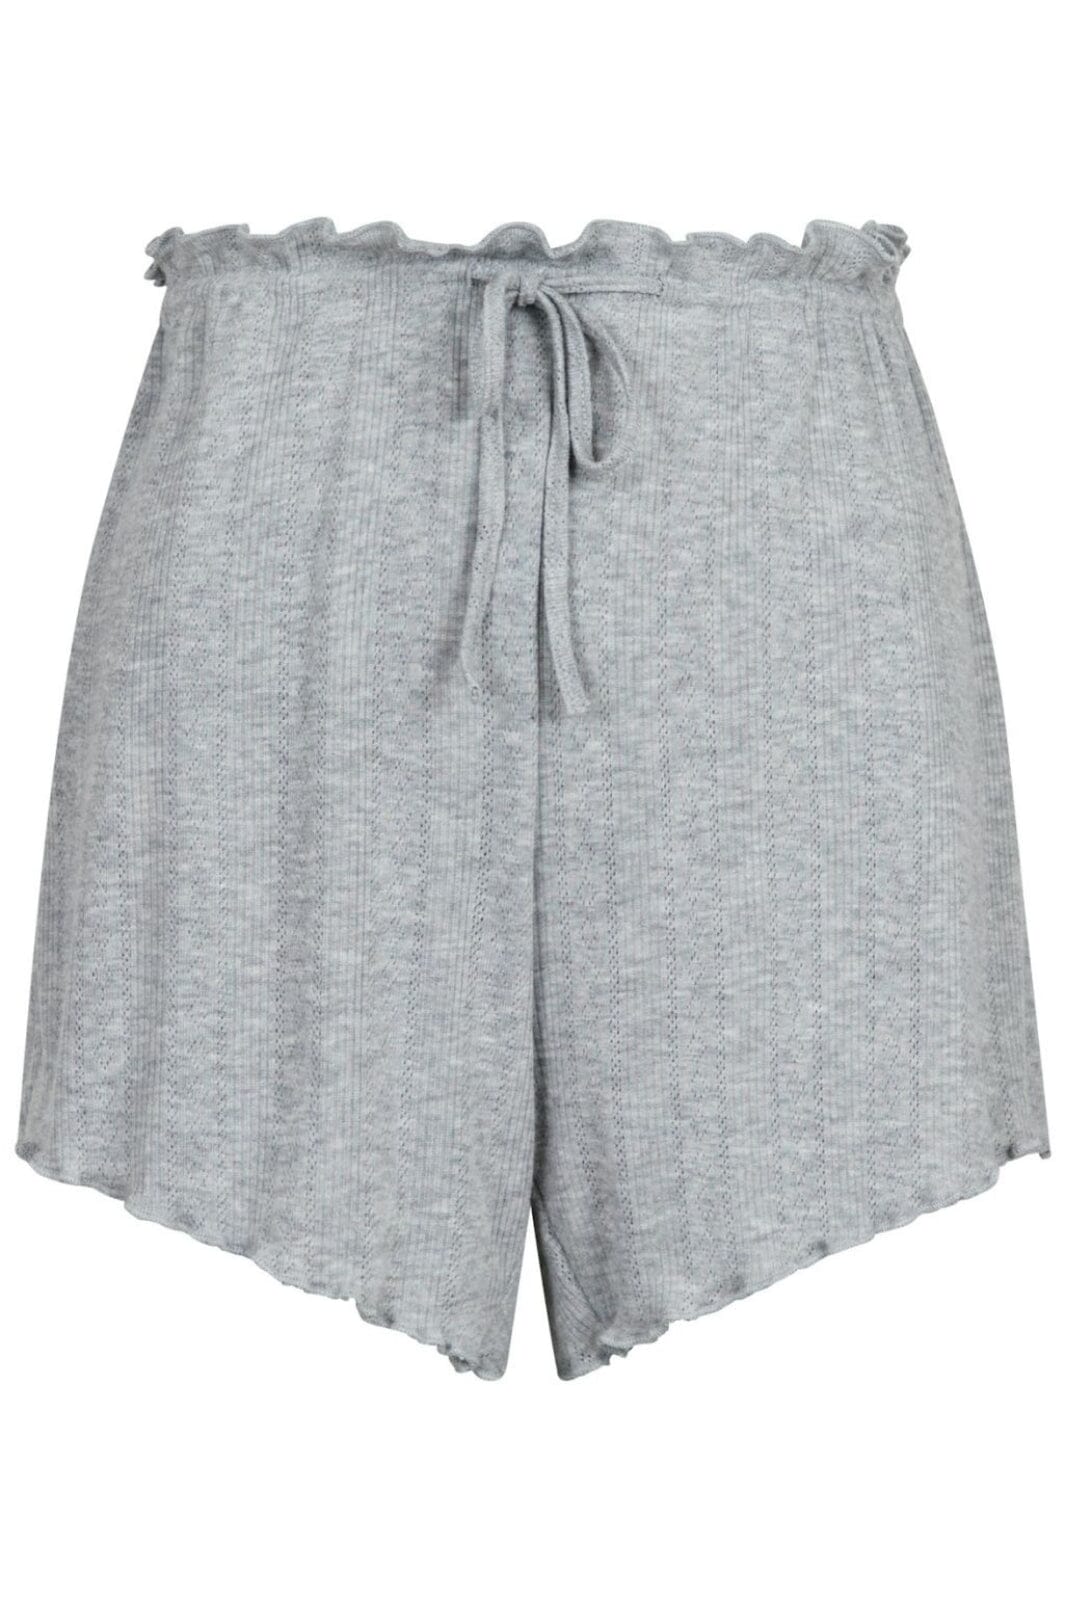 Neo Noir - Merritt Pointelle Shorts - Light Grey Shorts 